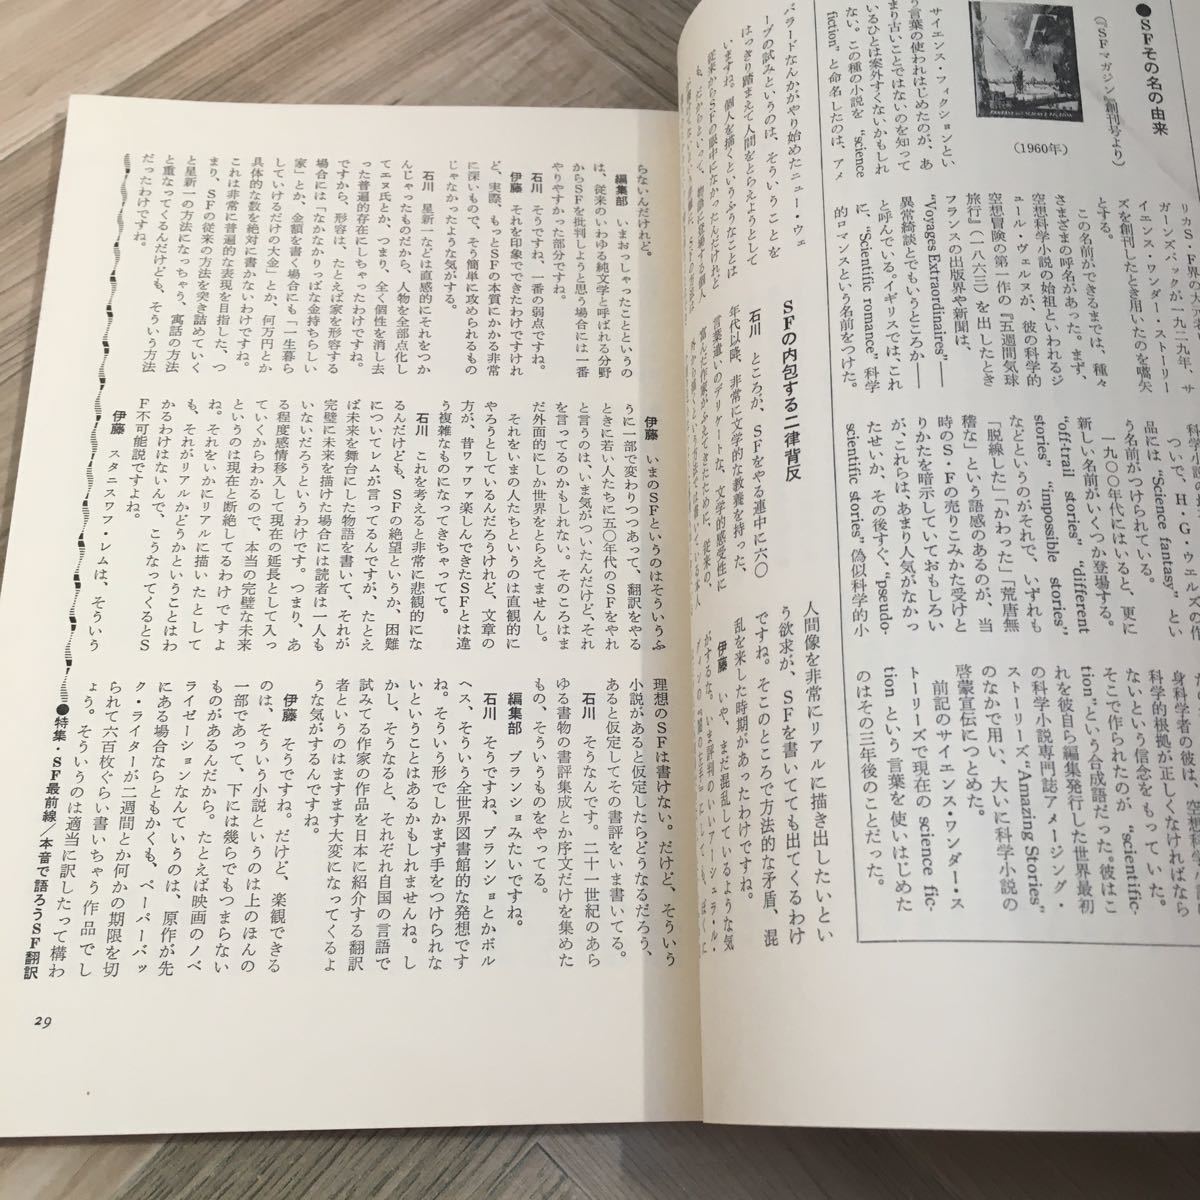 102g* письменный перевод. мир специальный выпуск SF самый передний линия будущее ... письменный перевод 1979 год 7 месяц номер Ishikawa Takashi . восток . Хара Мураками . один .